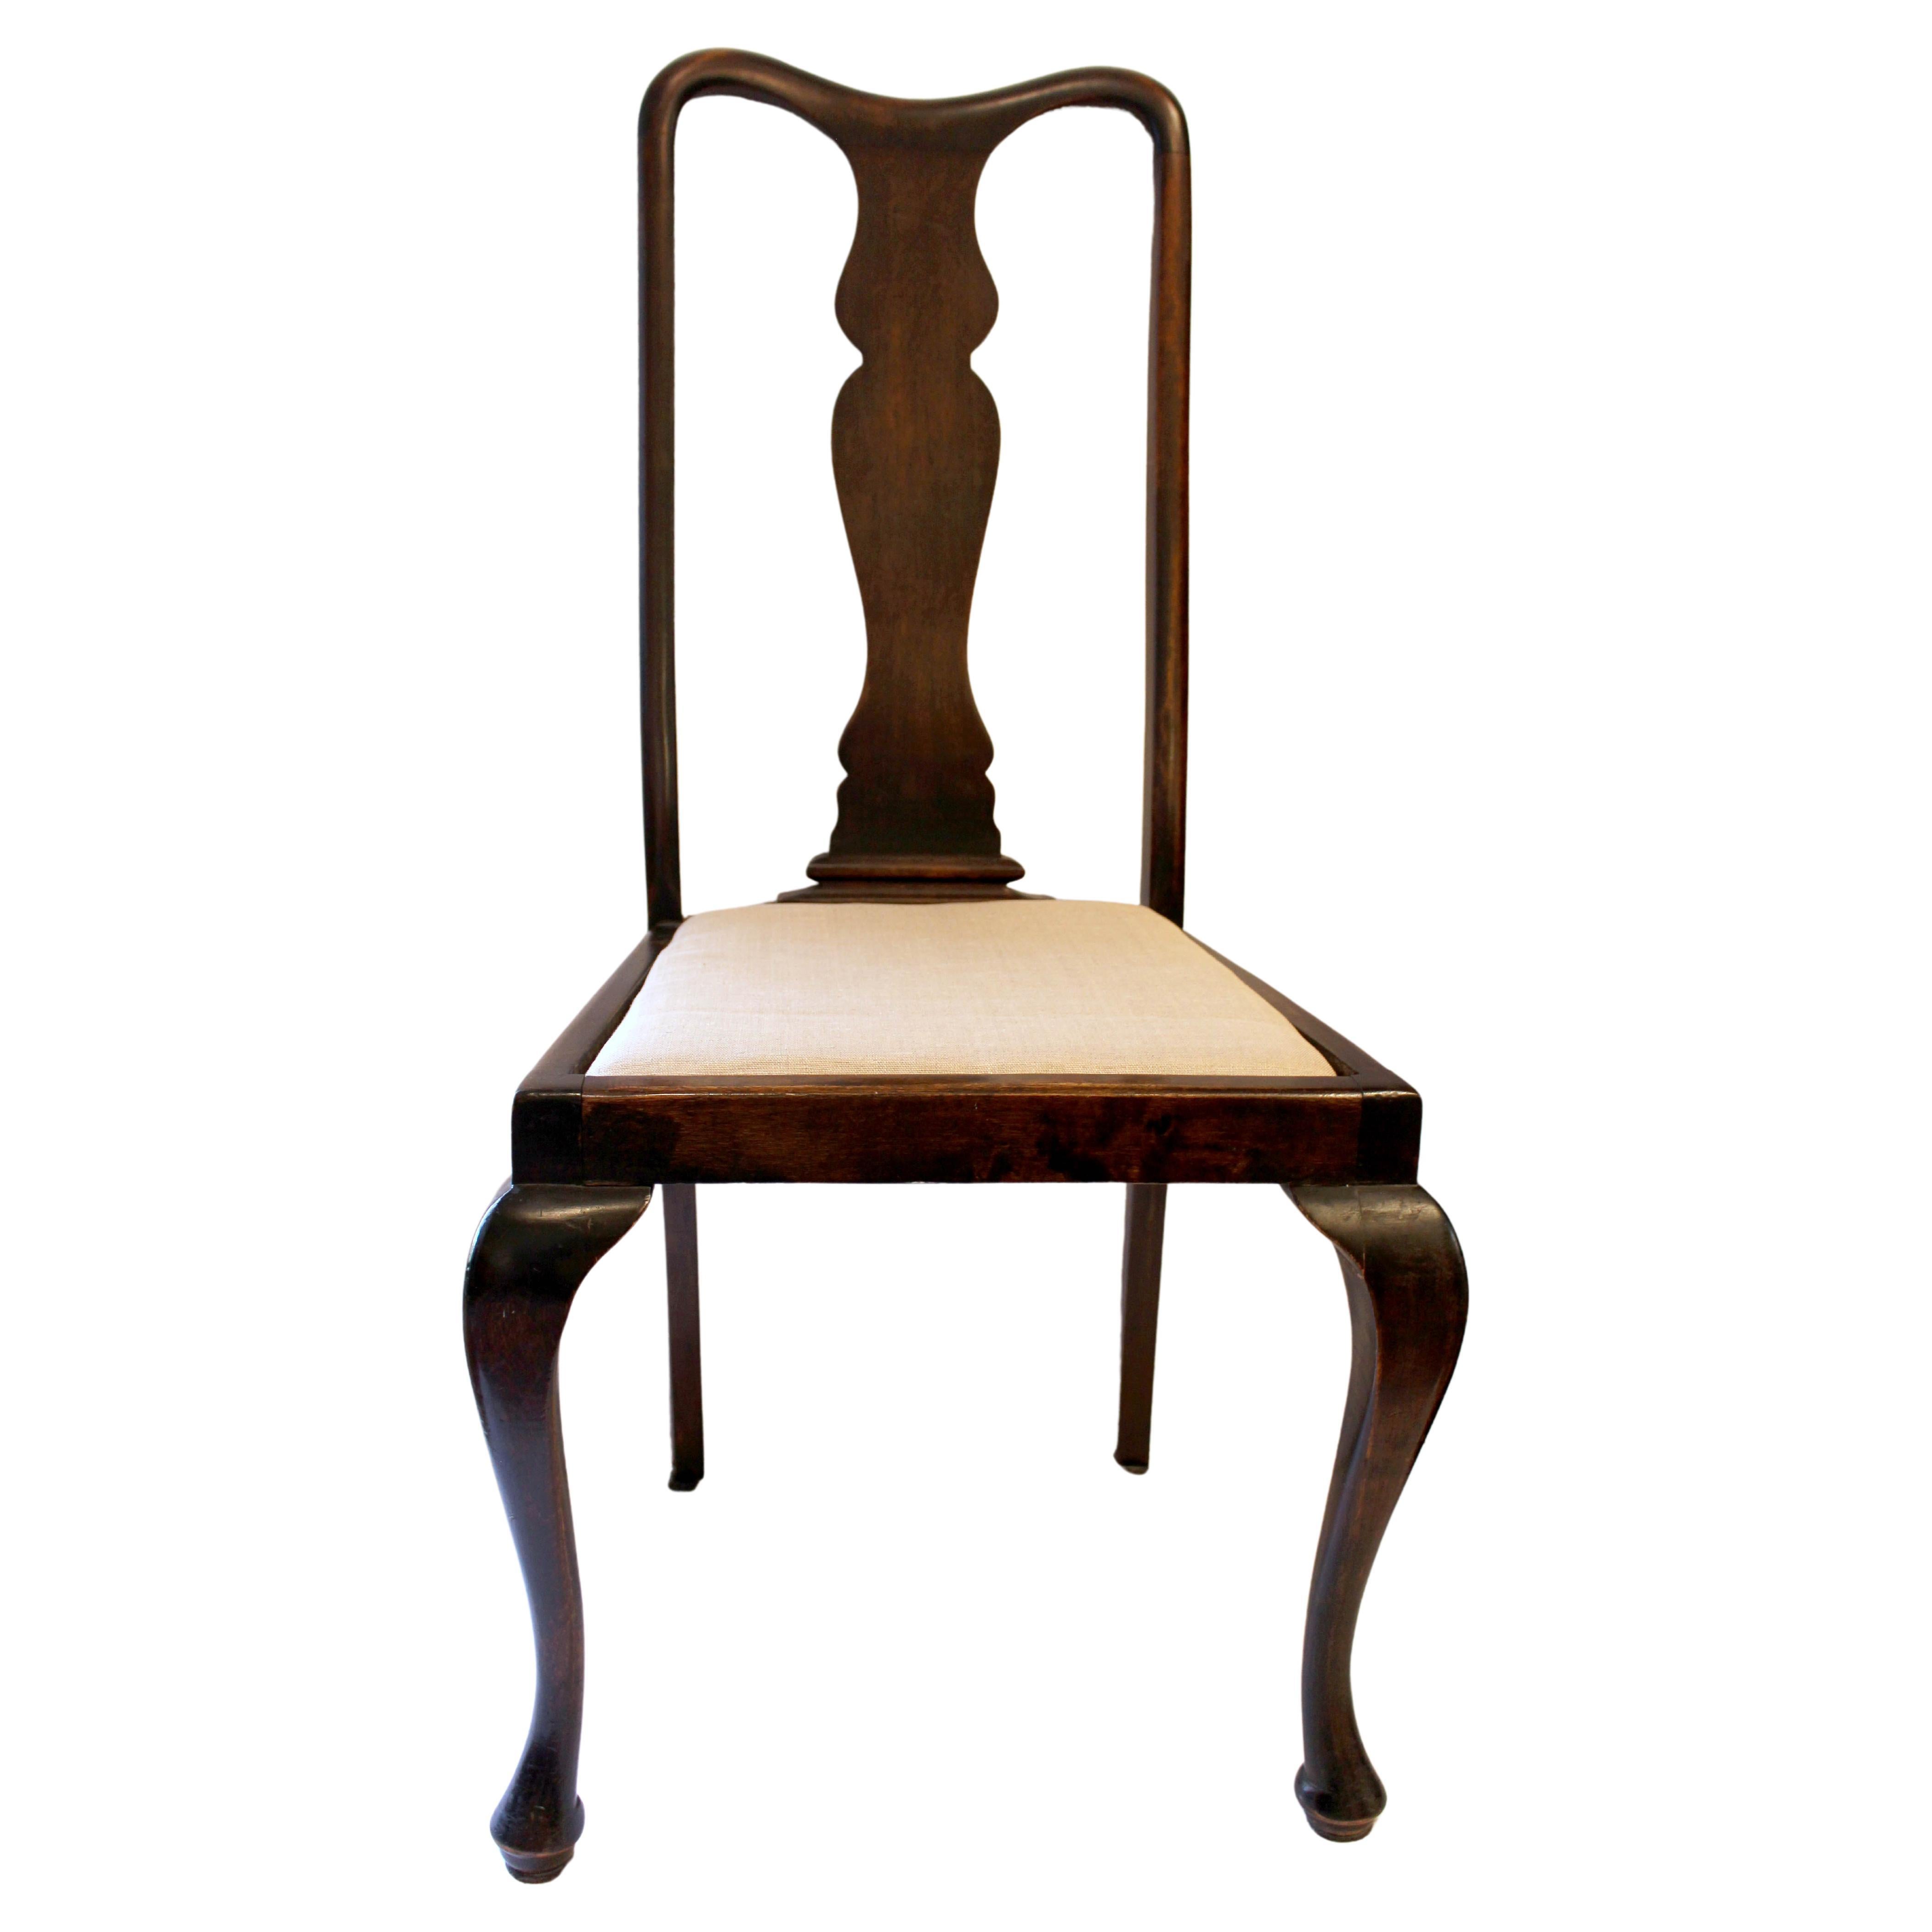 Beistellstuhl im Queen Anne-Stil des späten 19. Jahrhunderts, englisch